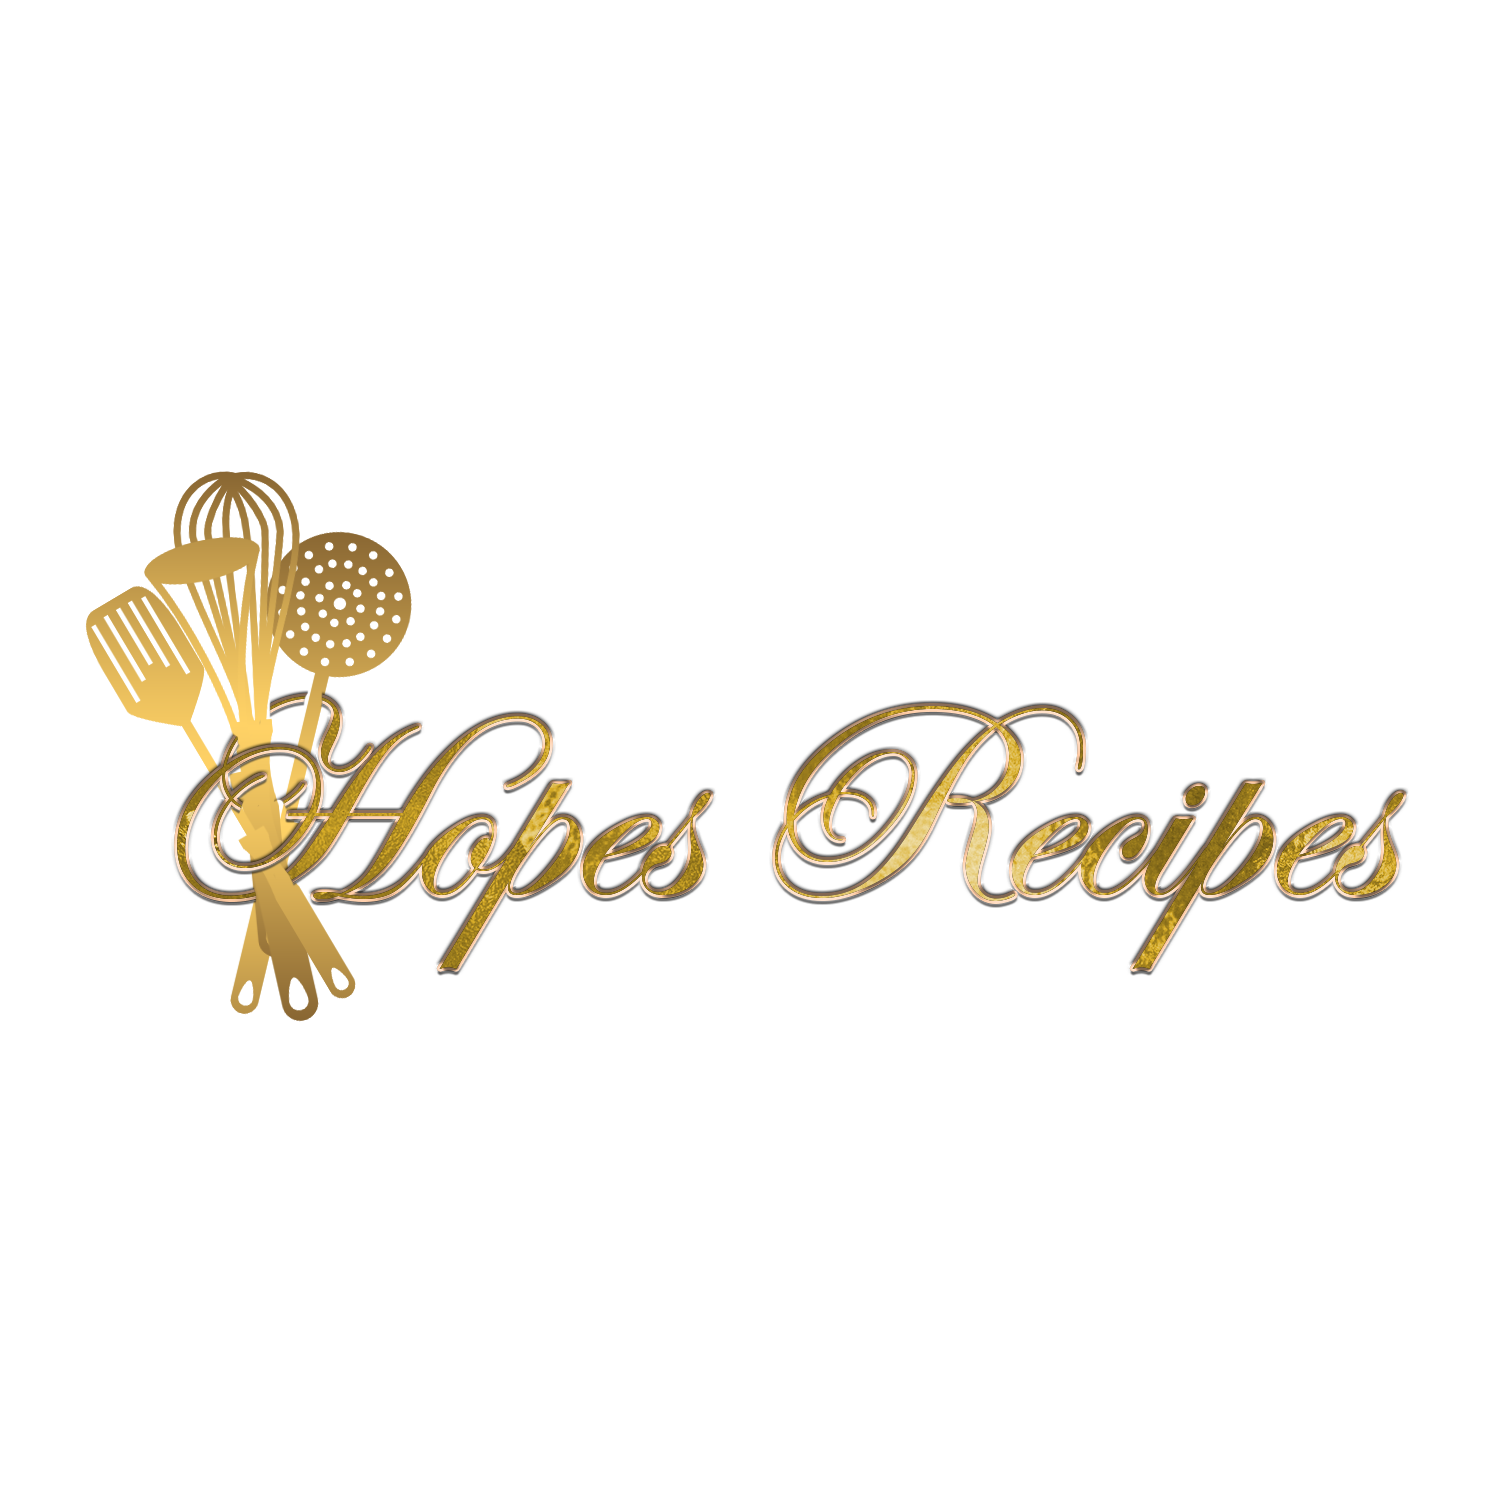 https://hopesrecipes.com/wp-content/uploads/2019/10/HOPES-RECIPES-GRAPHIC-LOGO-03.png